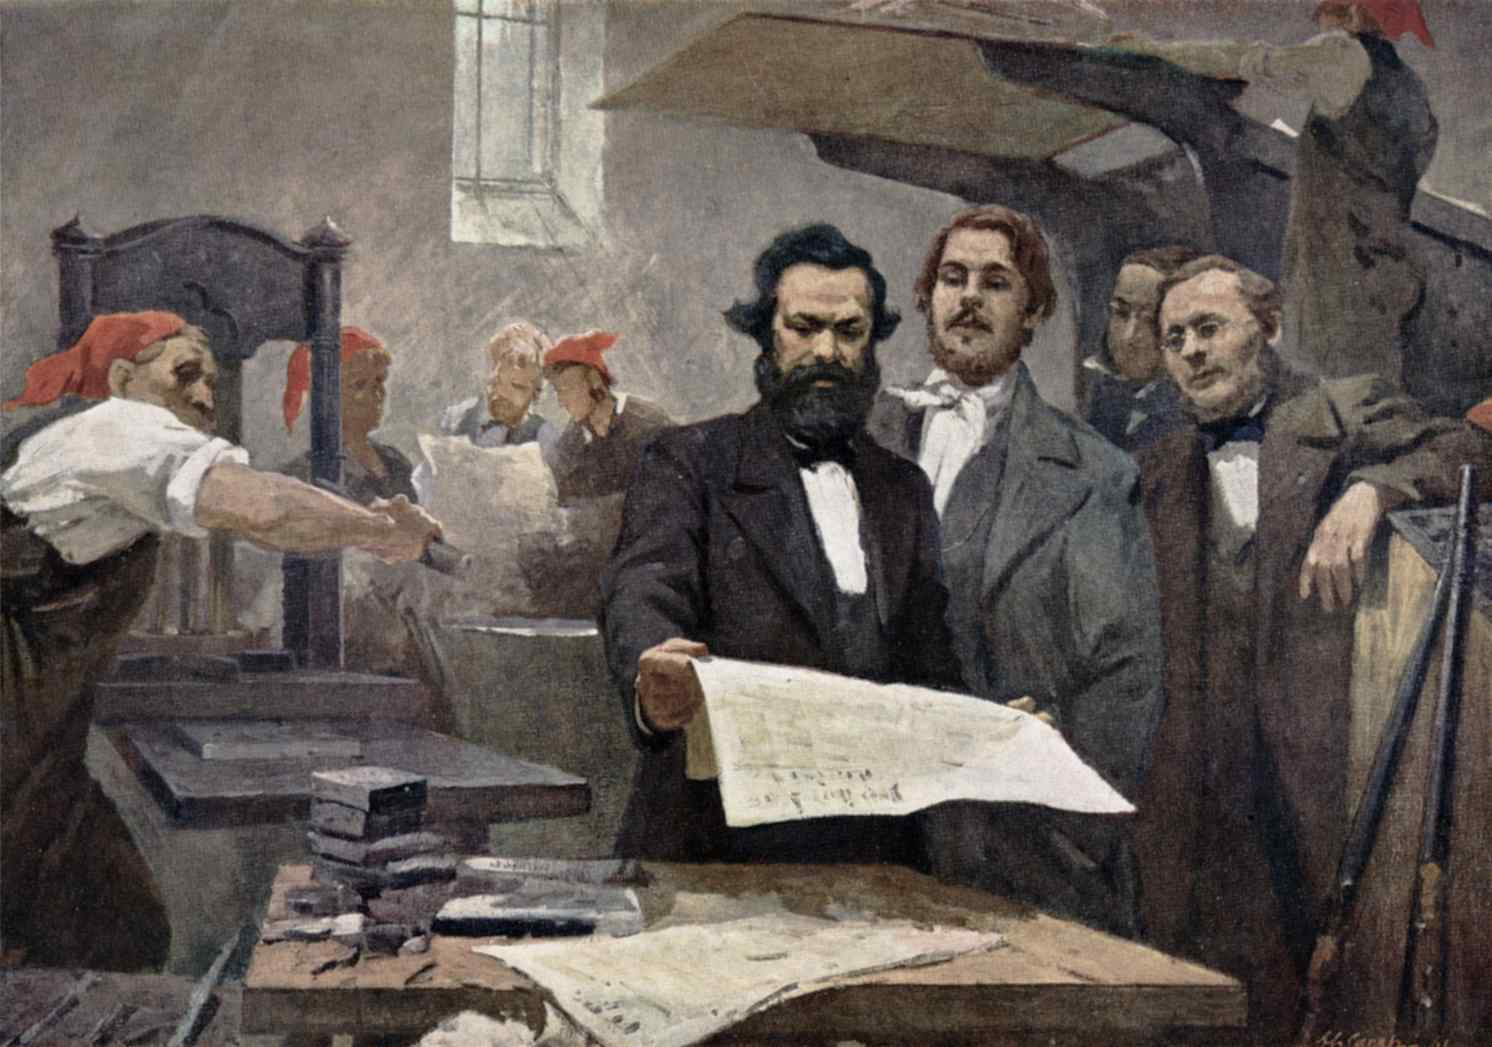 ماركس وأنجلز في المطبعة أثناء نشر المانفستو الشيوعي (لوحة بريشة الفنان الروسي شابيرو، 1961)